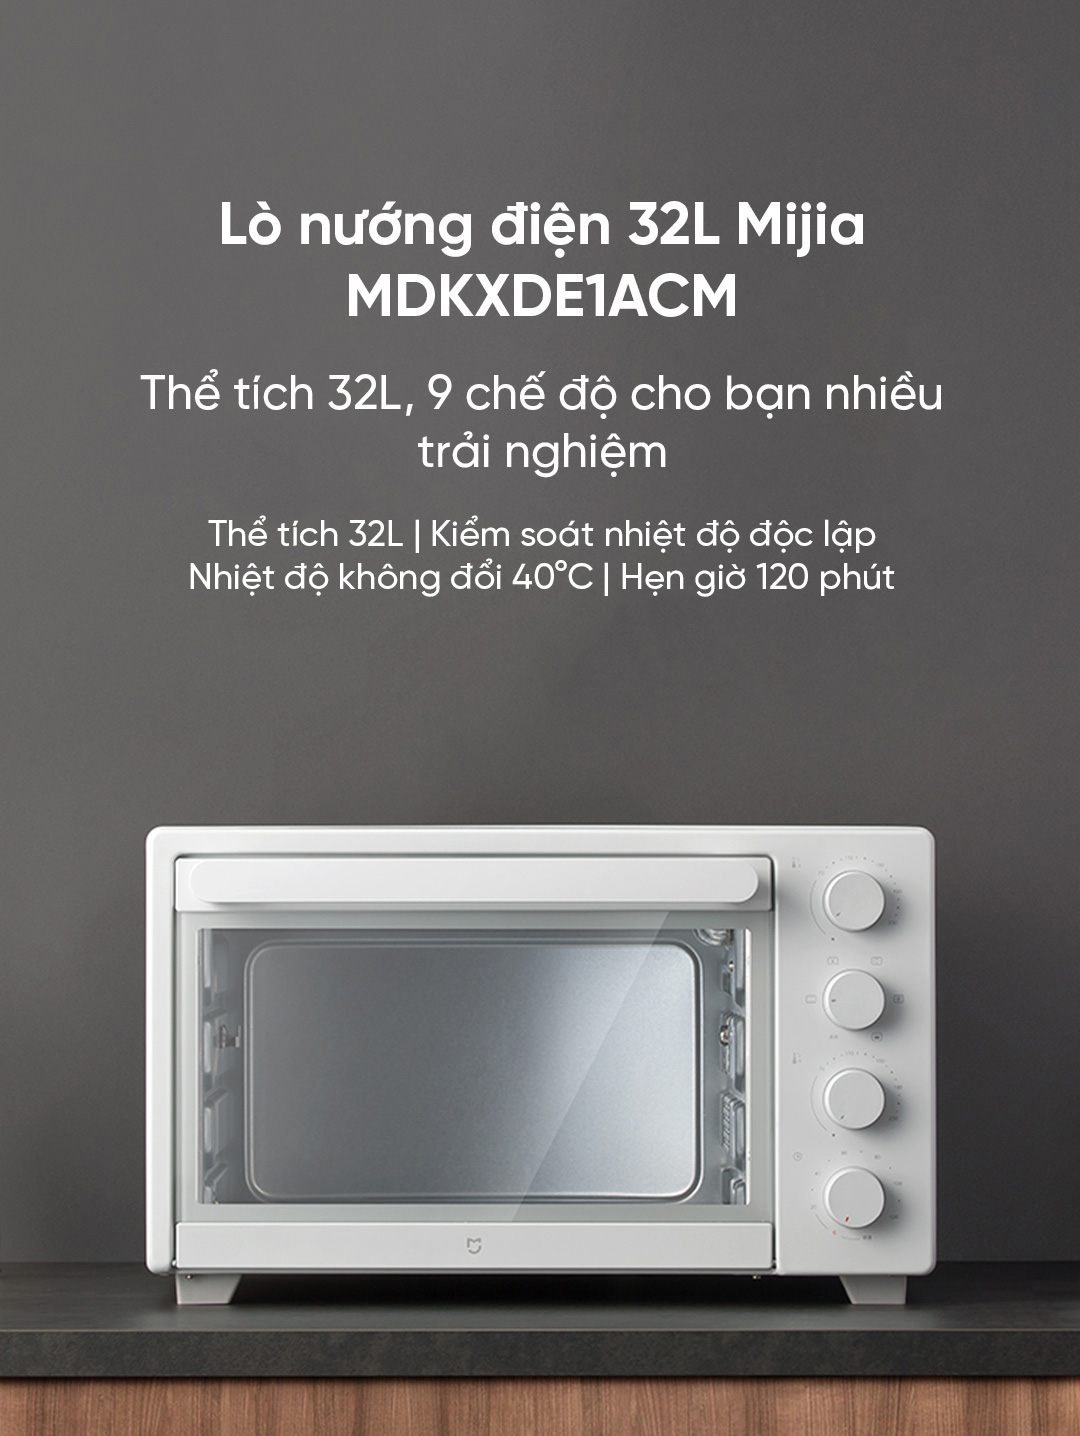 Lò nướng điện 32L Mijia MDKXDE1ACM trang bị thể tích 32L. Kiểm soát nhiệt độ độc lập. Nhiệt độ không đổi 40°C. Hẹn giờ 120 phút